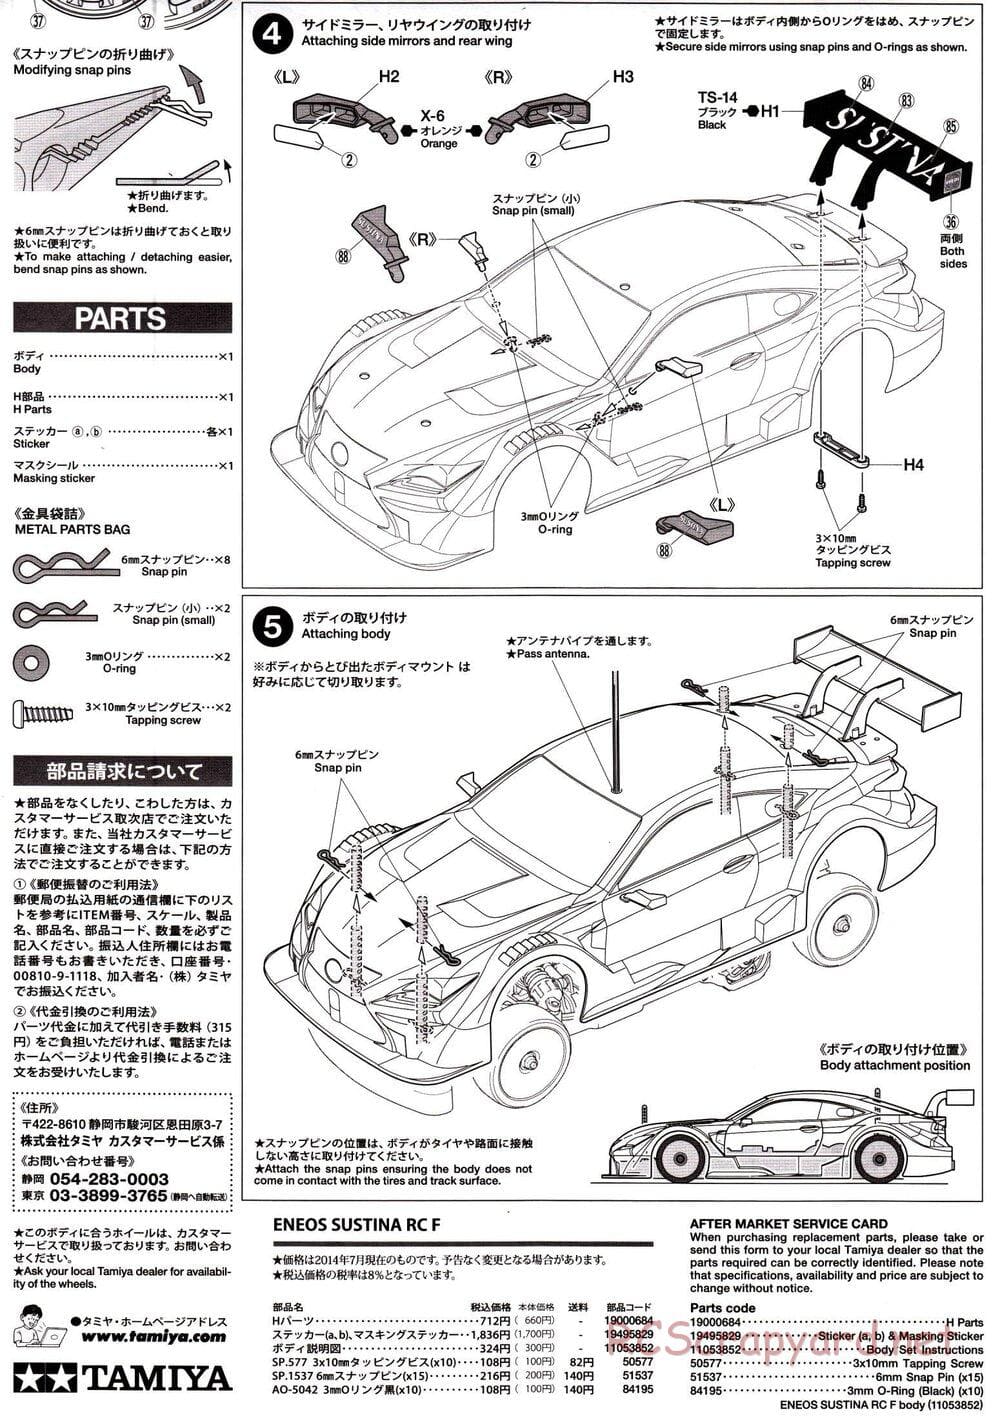 Tamiya - Eneos Sustina RC-F - TT-02 Chassis - Body Manual - Page 5